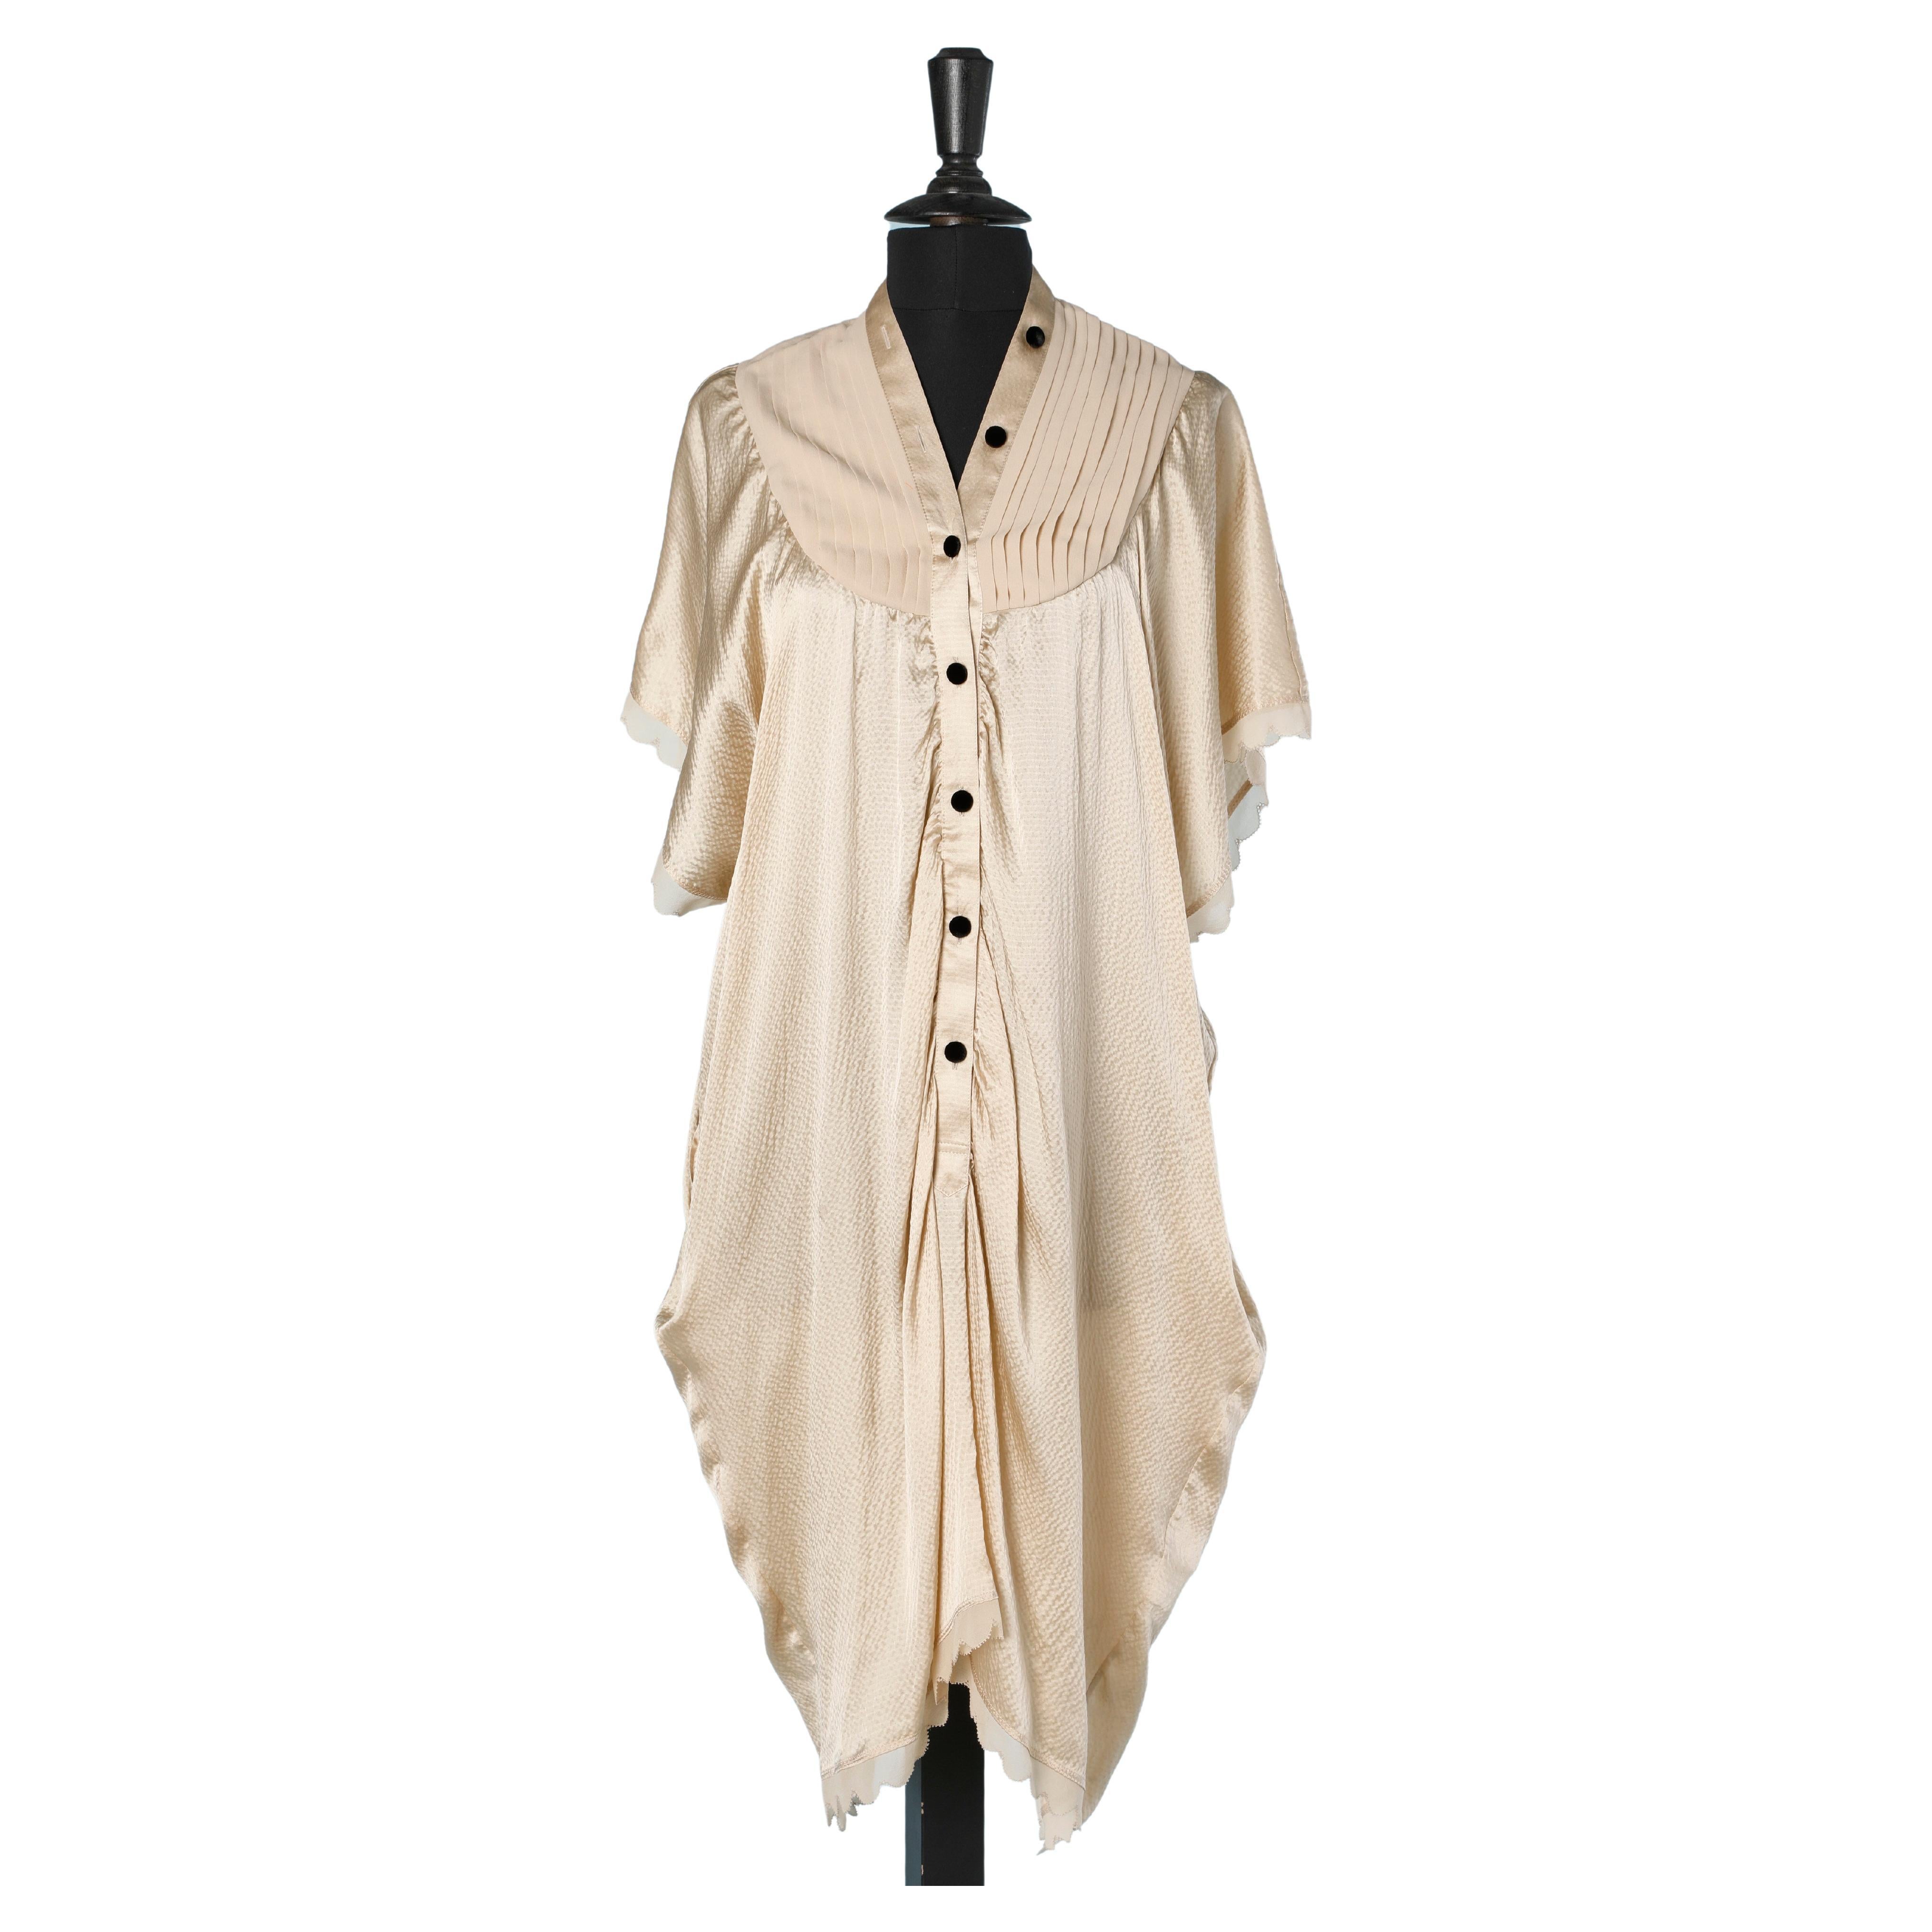 Ivory silk dress with black velvet buttons Tsumori Chisato